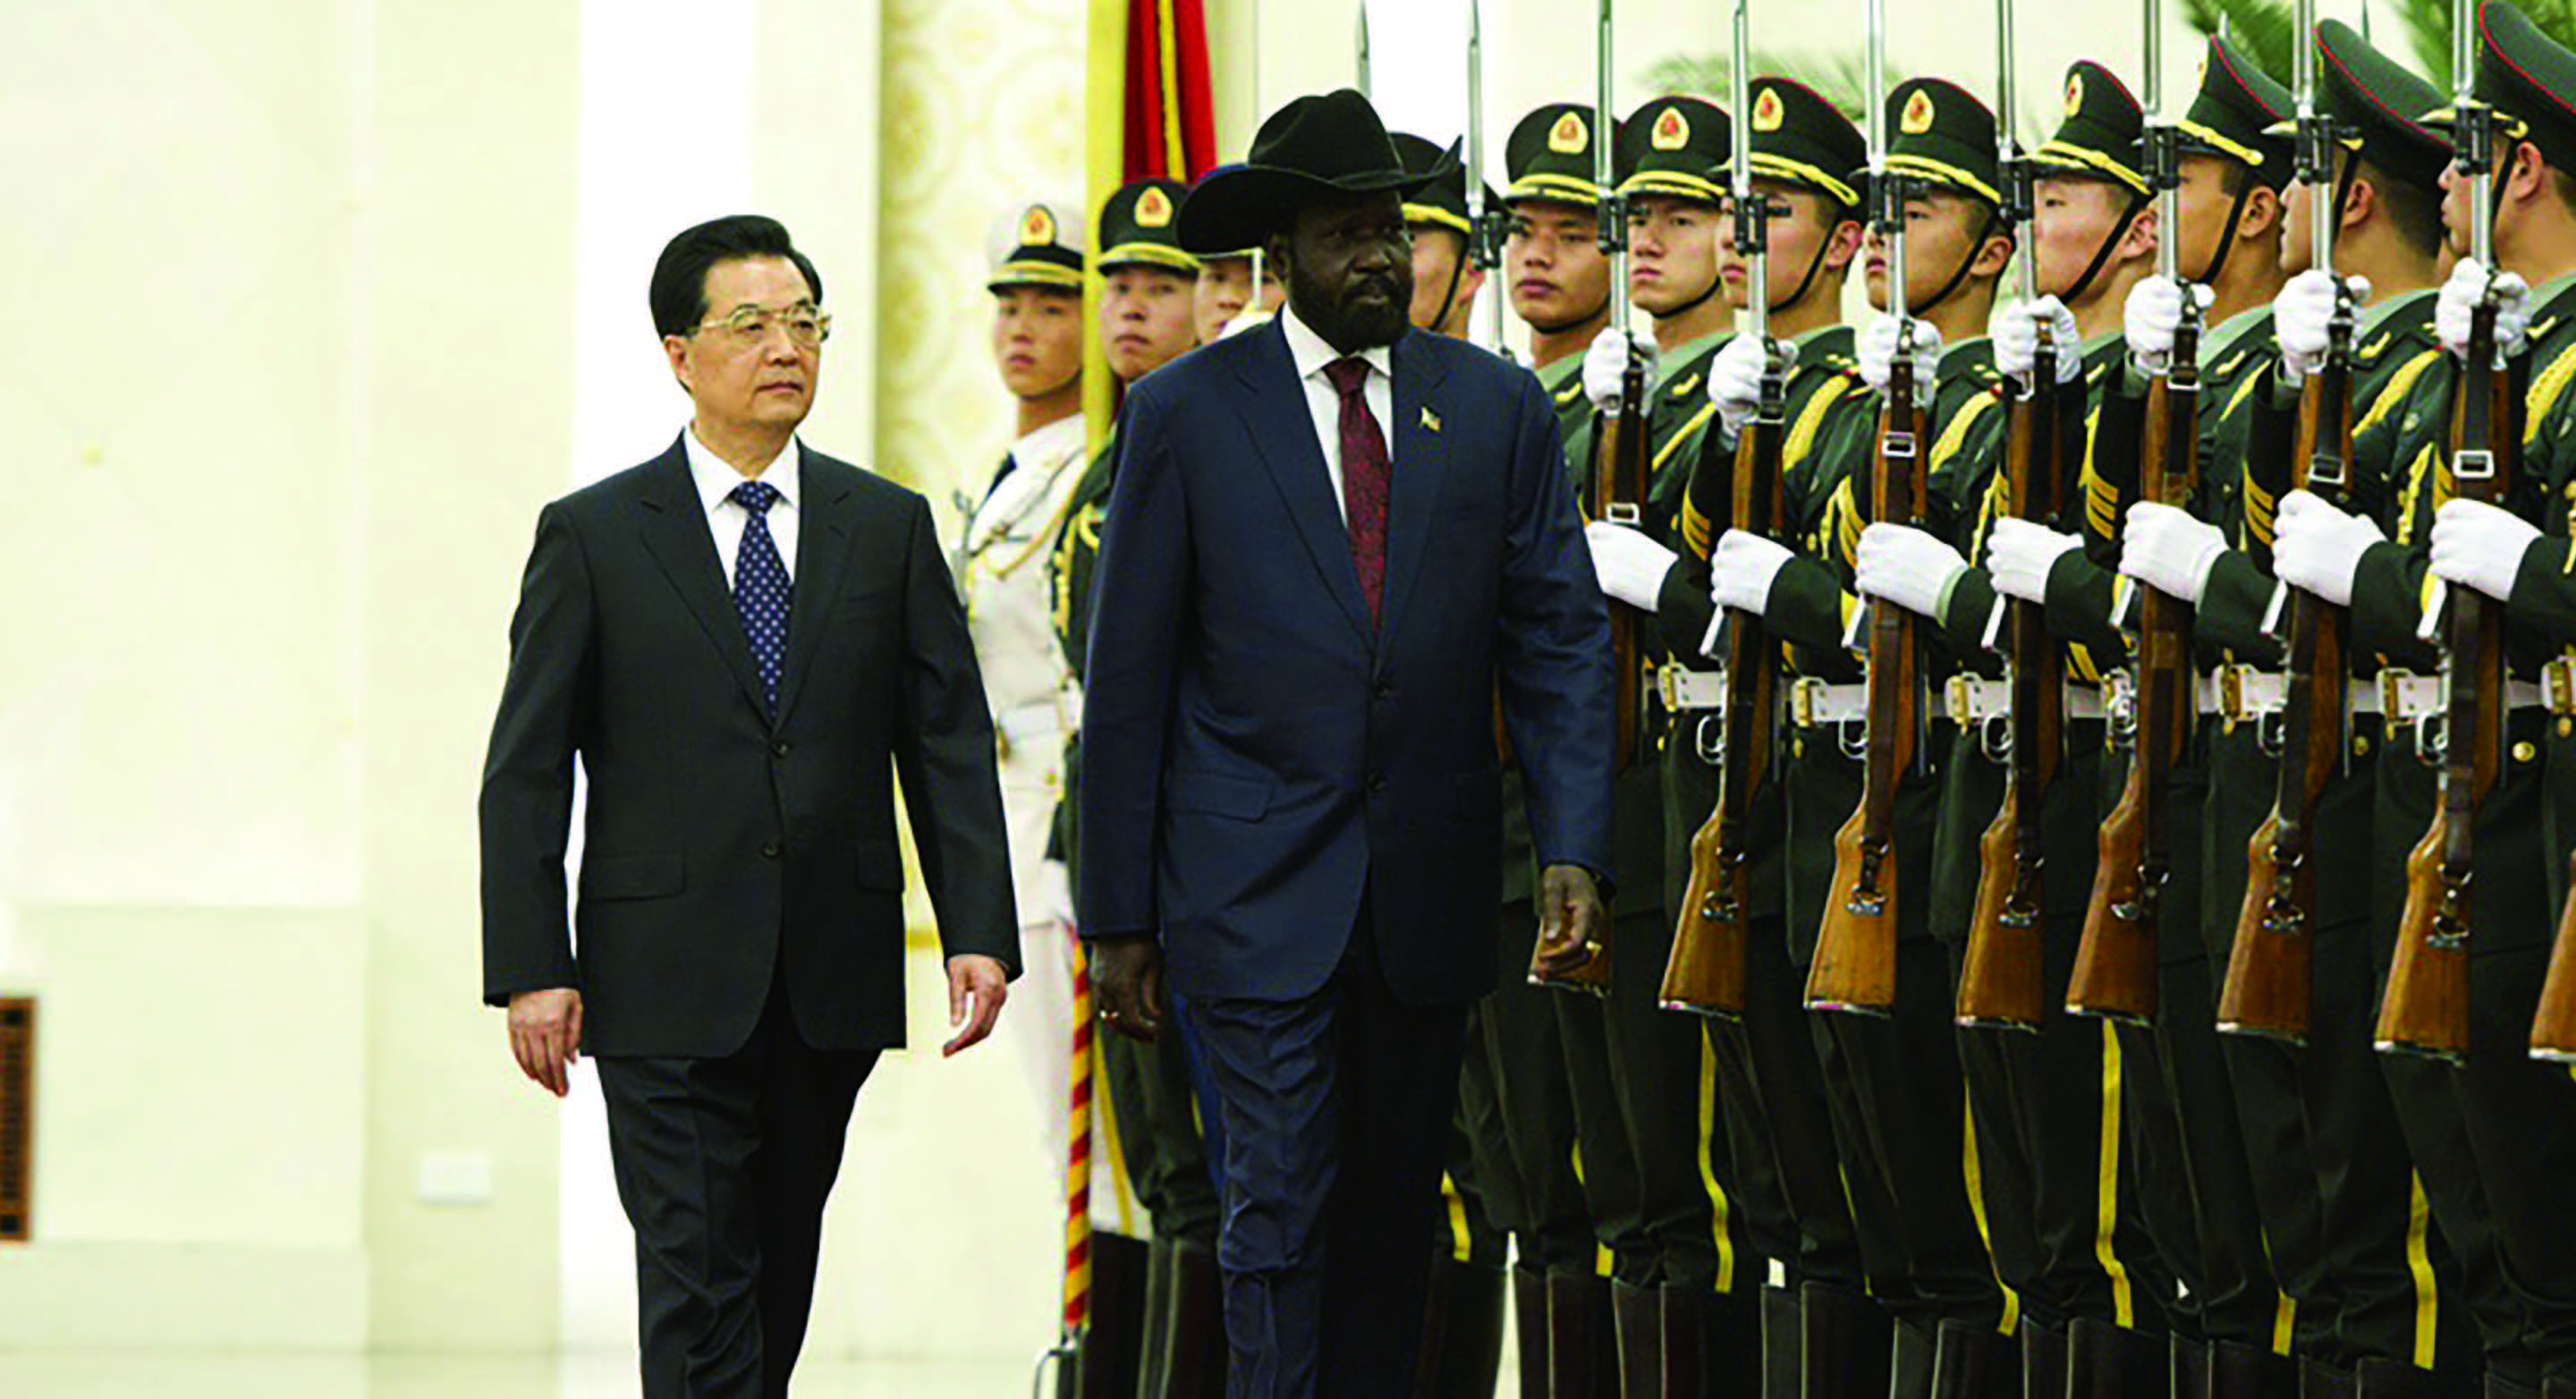 Çin Cumhurbaşkanı Hu Jintao, 24 Nisan 2012 tarihinde Pekin'deki Büyük Halk Salonunda Güney Sudan Cumhurbaşkanı Salva Kiir Mayardit'i ağırladı. (Xinhua)